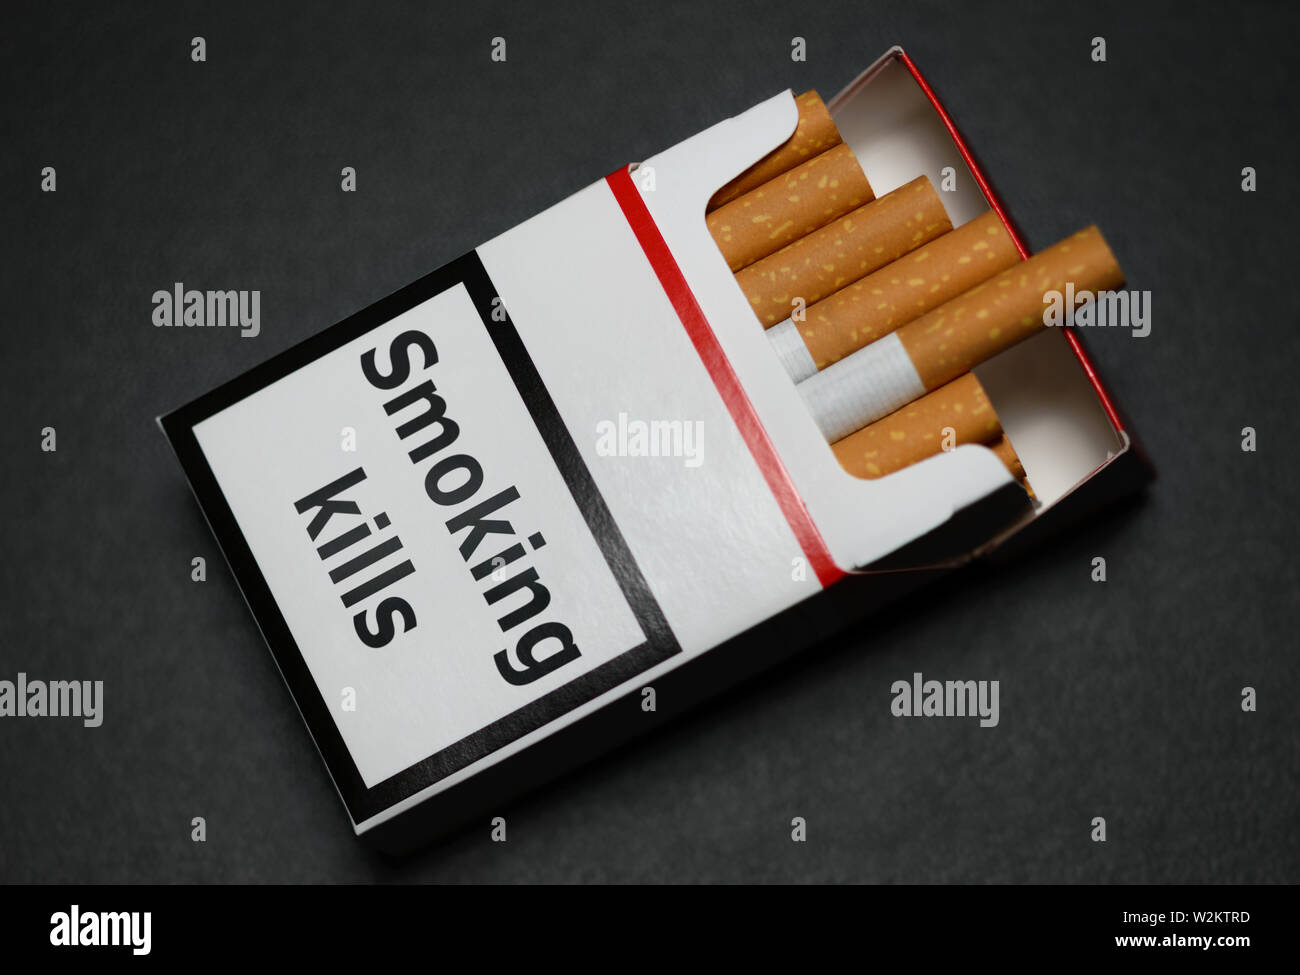 Smoking kills cigarettes cigarette pack packet box warning tag notice ...